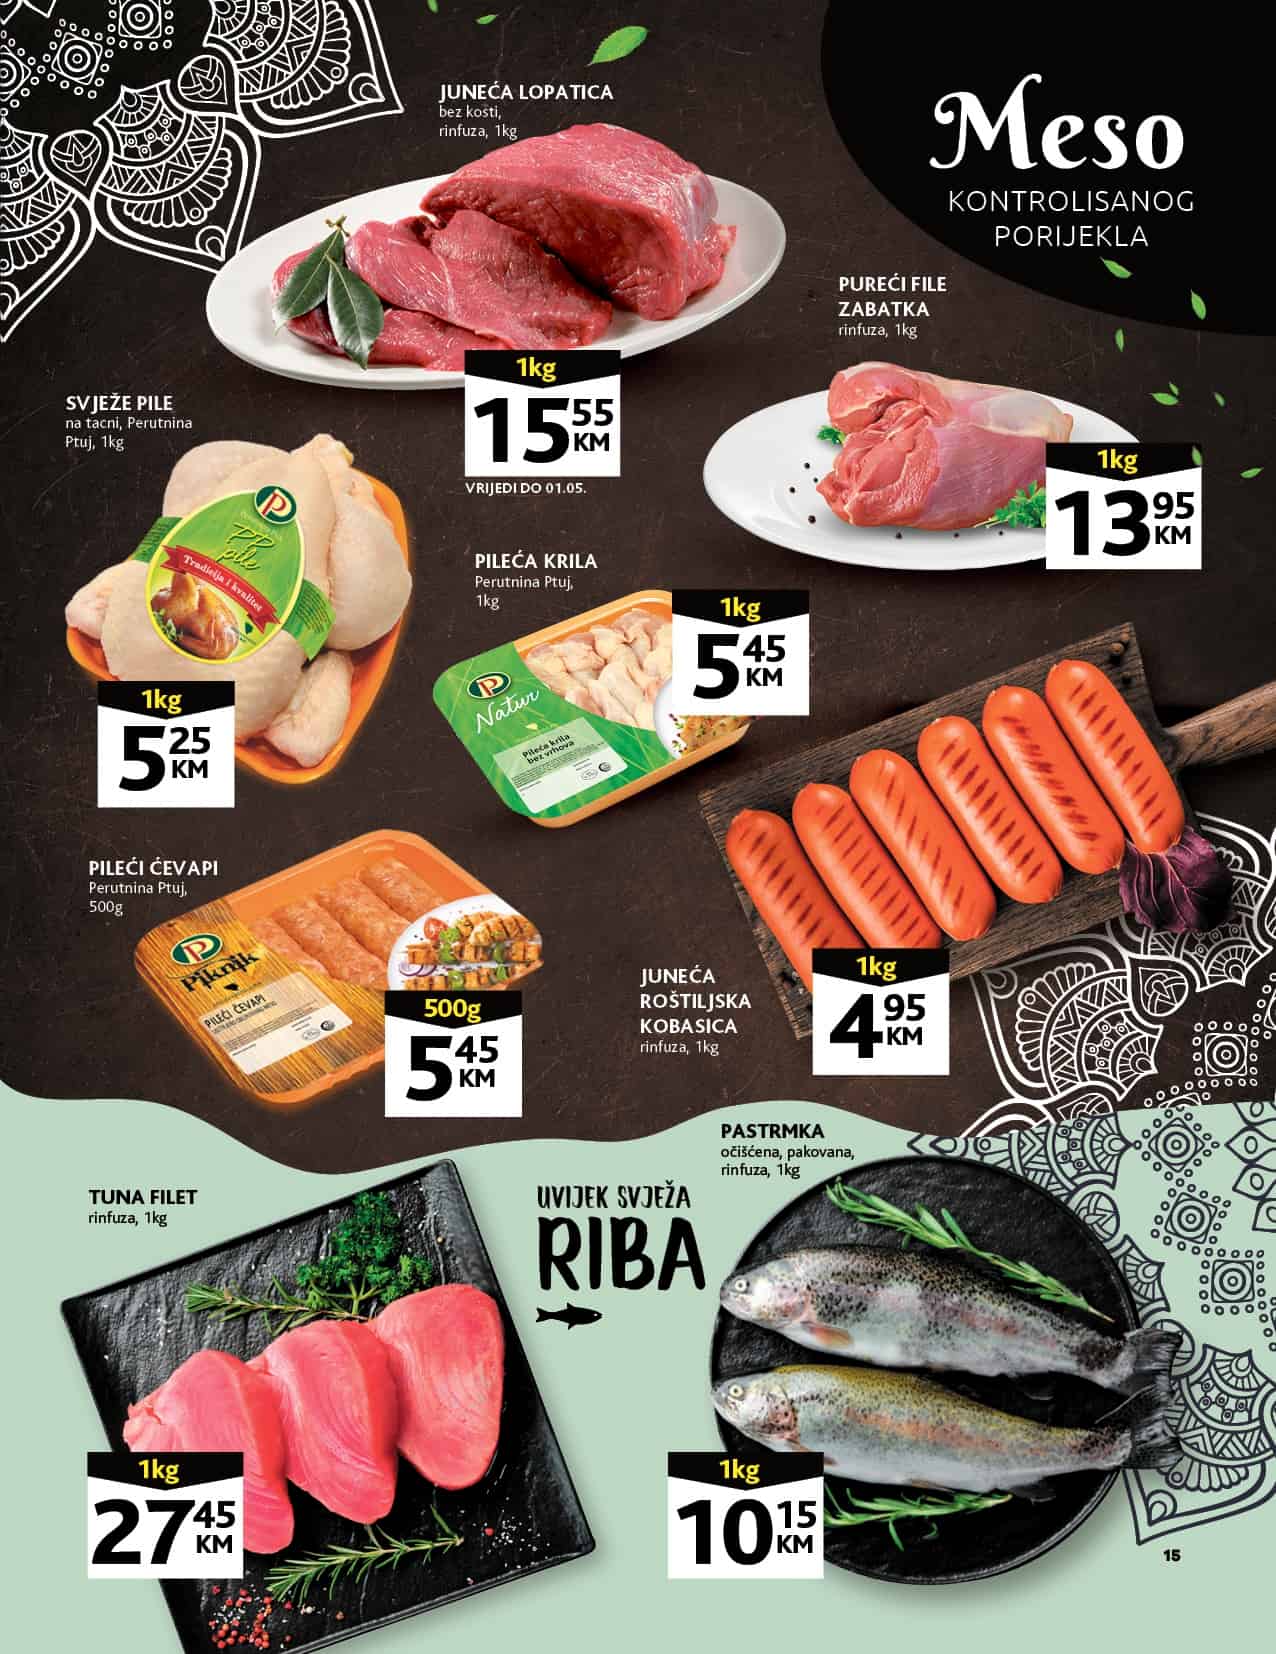 Akcijske cijene svježeg mesa ribe pogledajte u nastavku!